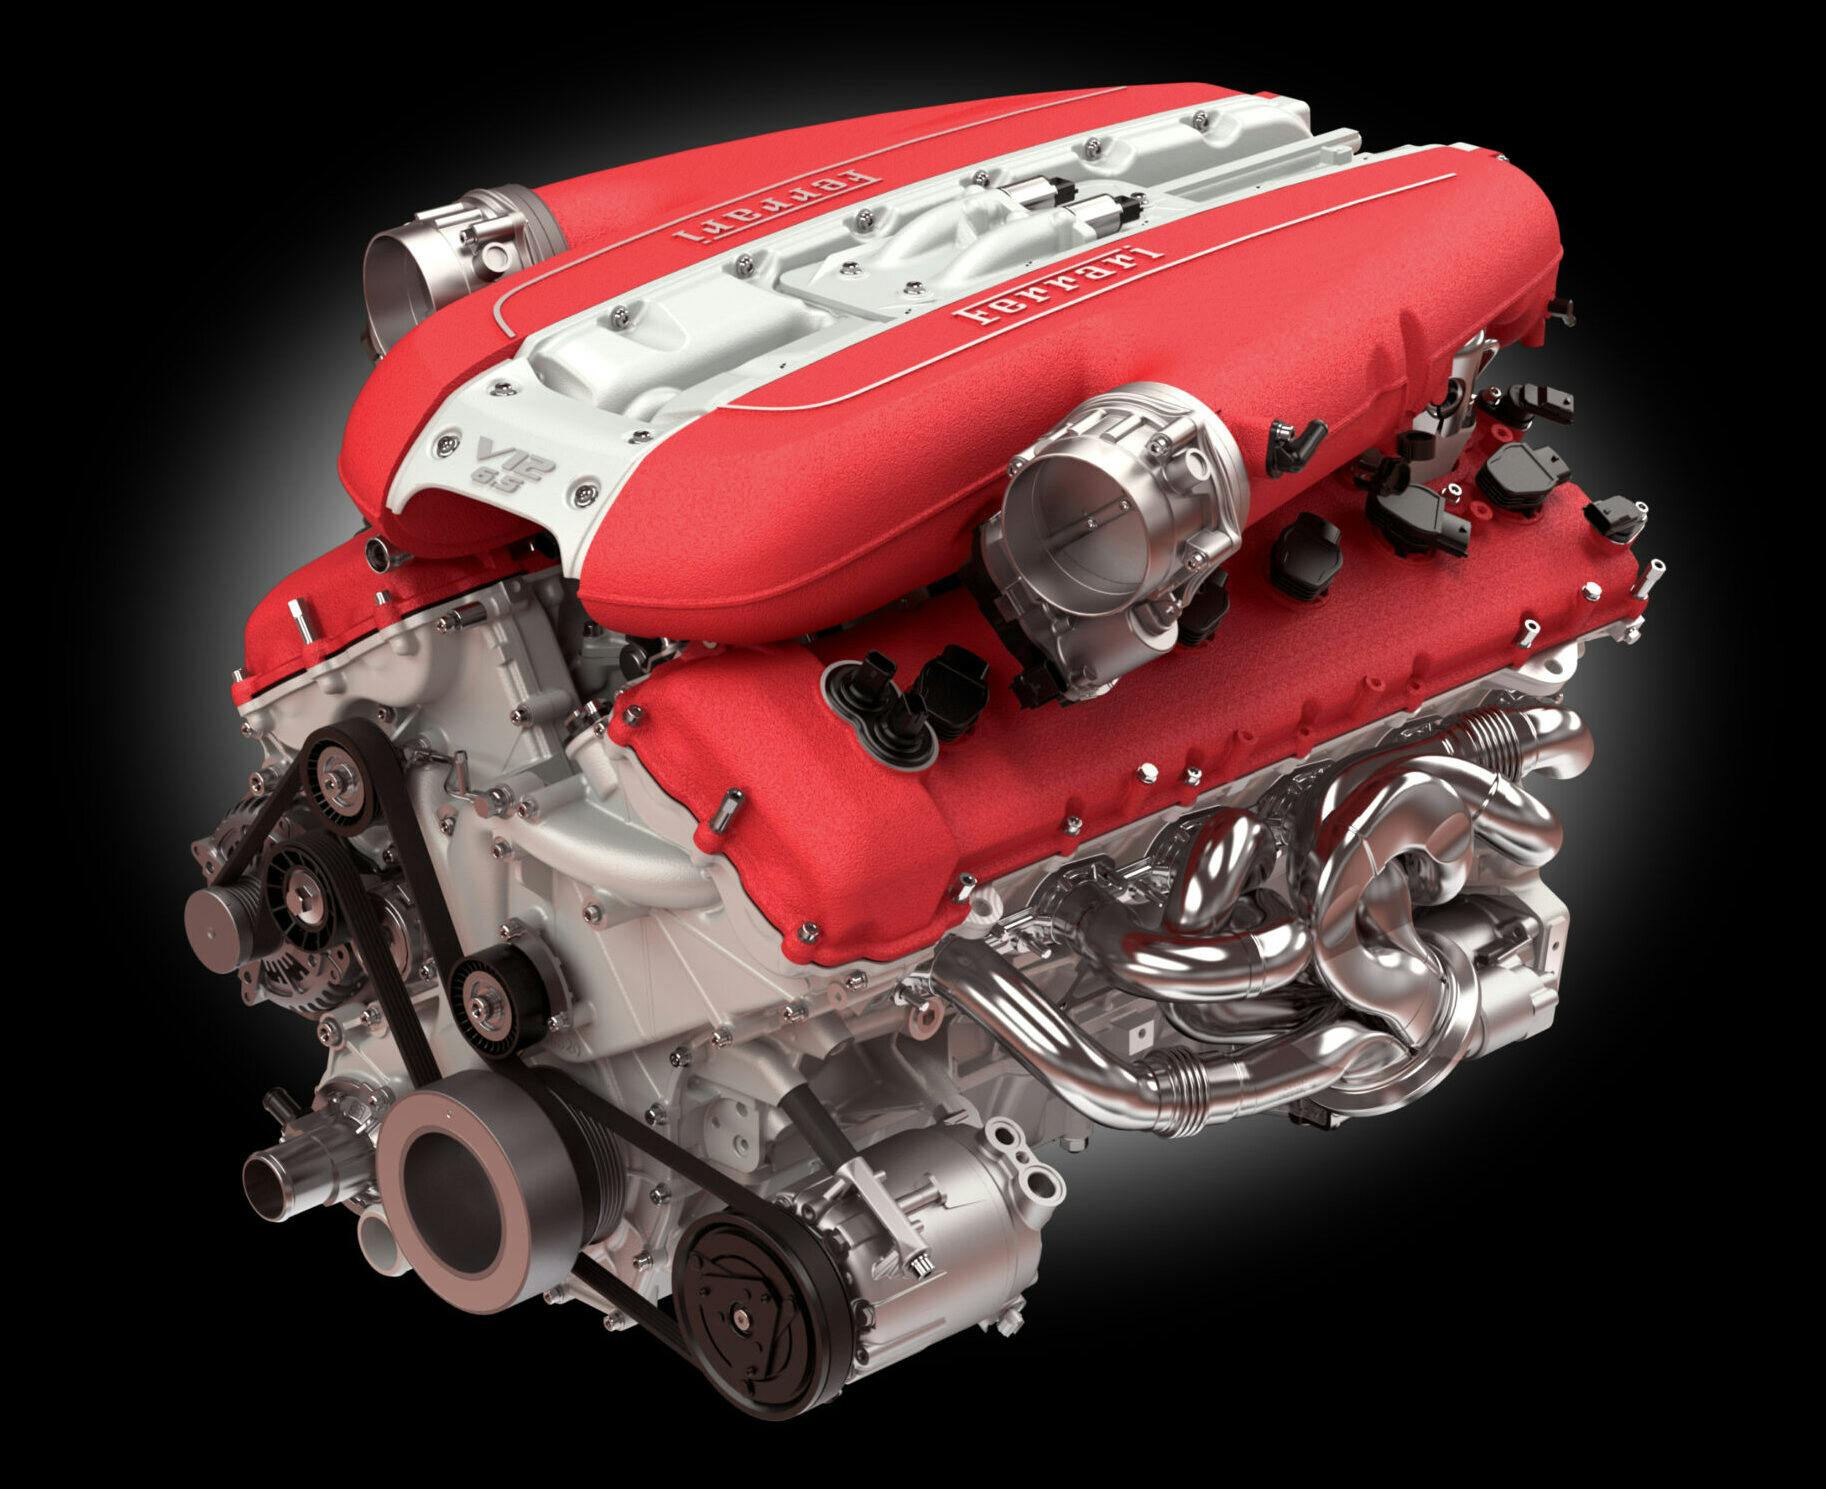 Superfast Ferrari V12 engine